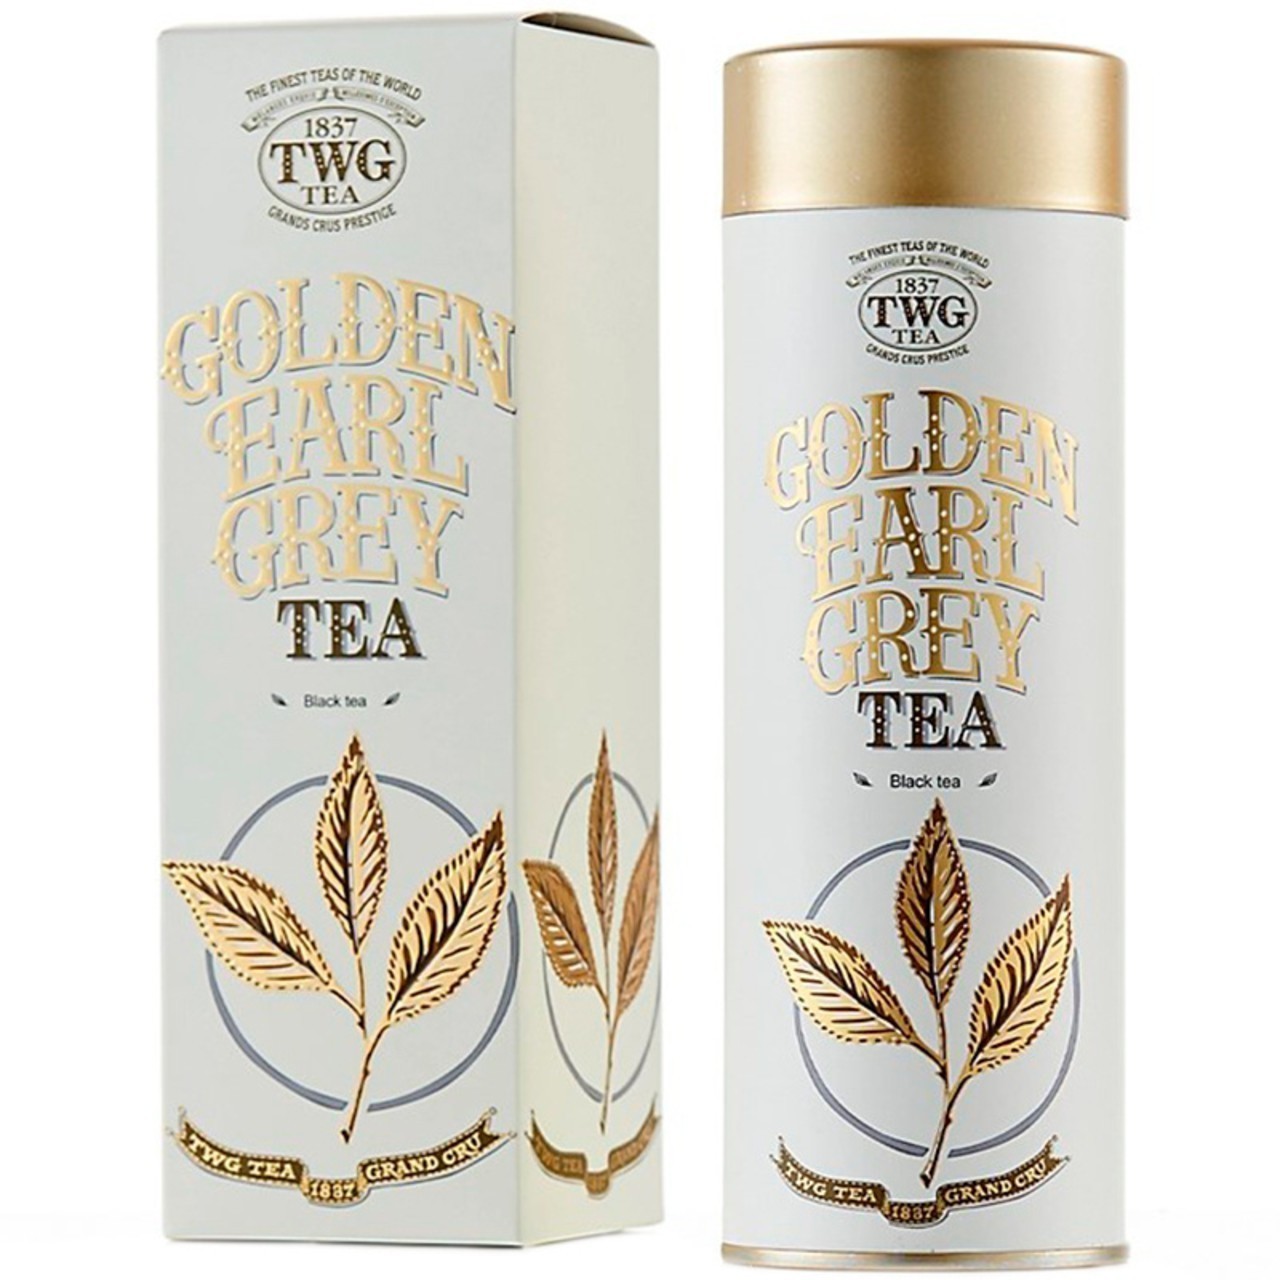 twg tea golden earl grey 100 g